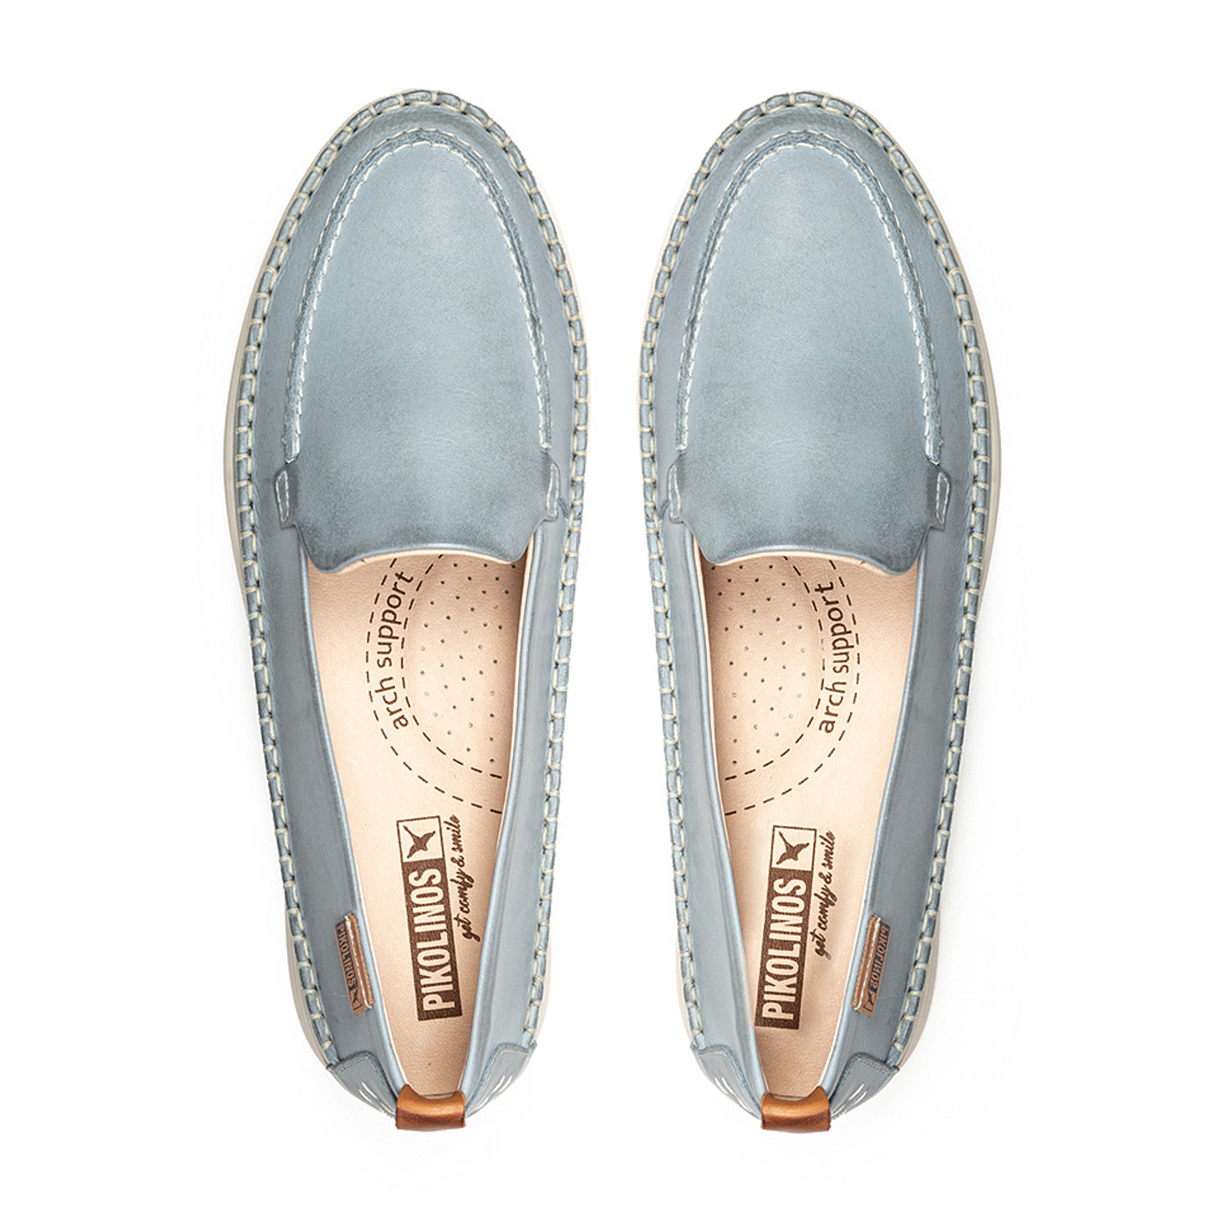 Pikolinos Gandia W2Y-3802 (Women) Denim Dress-Casual - Loafers - The Heel Shoe Fitters